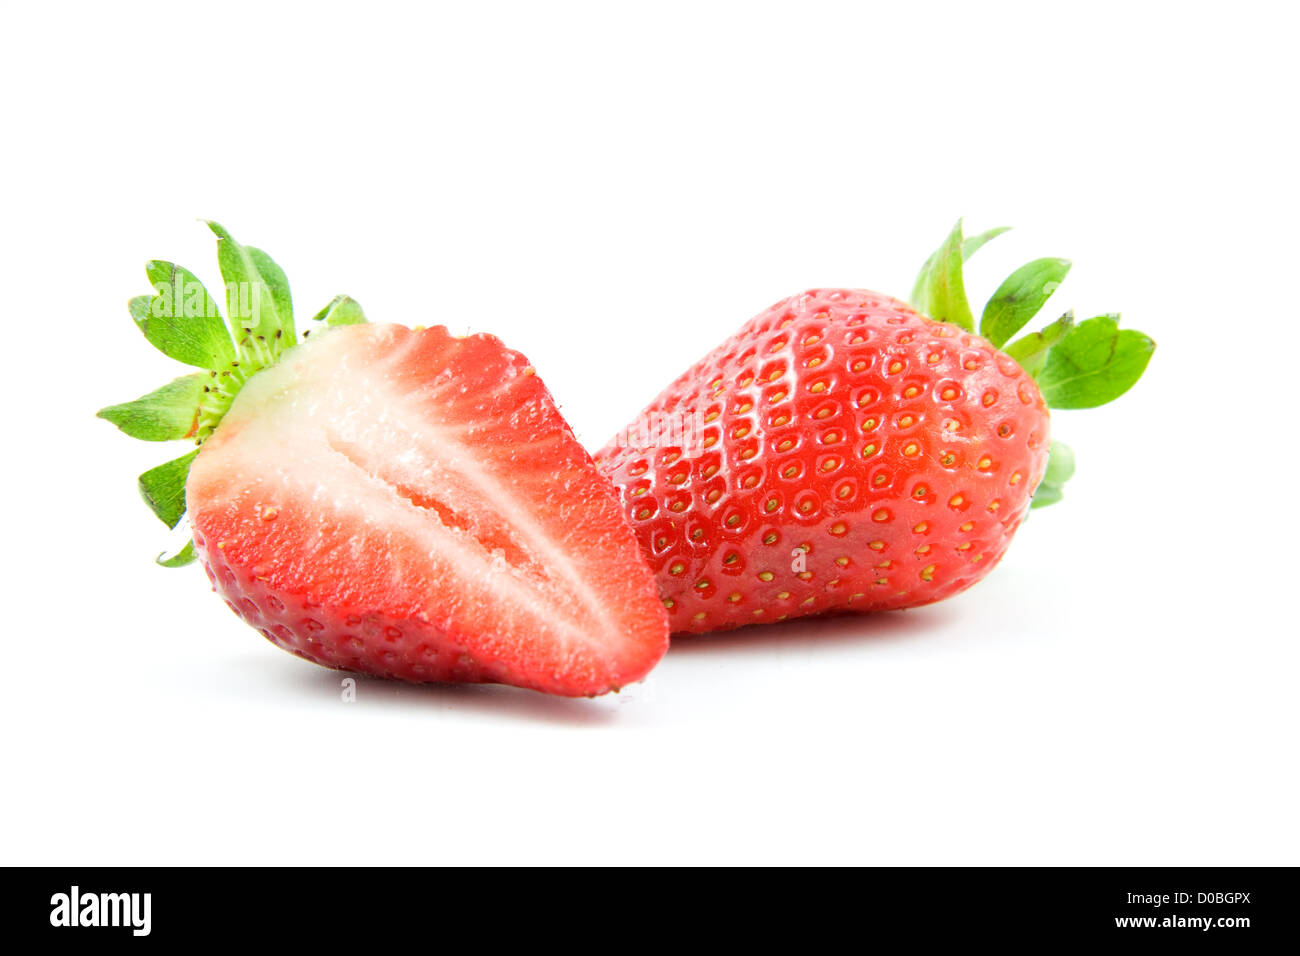 strawberrys isolated on white background Stock Photo